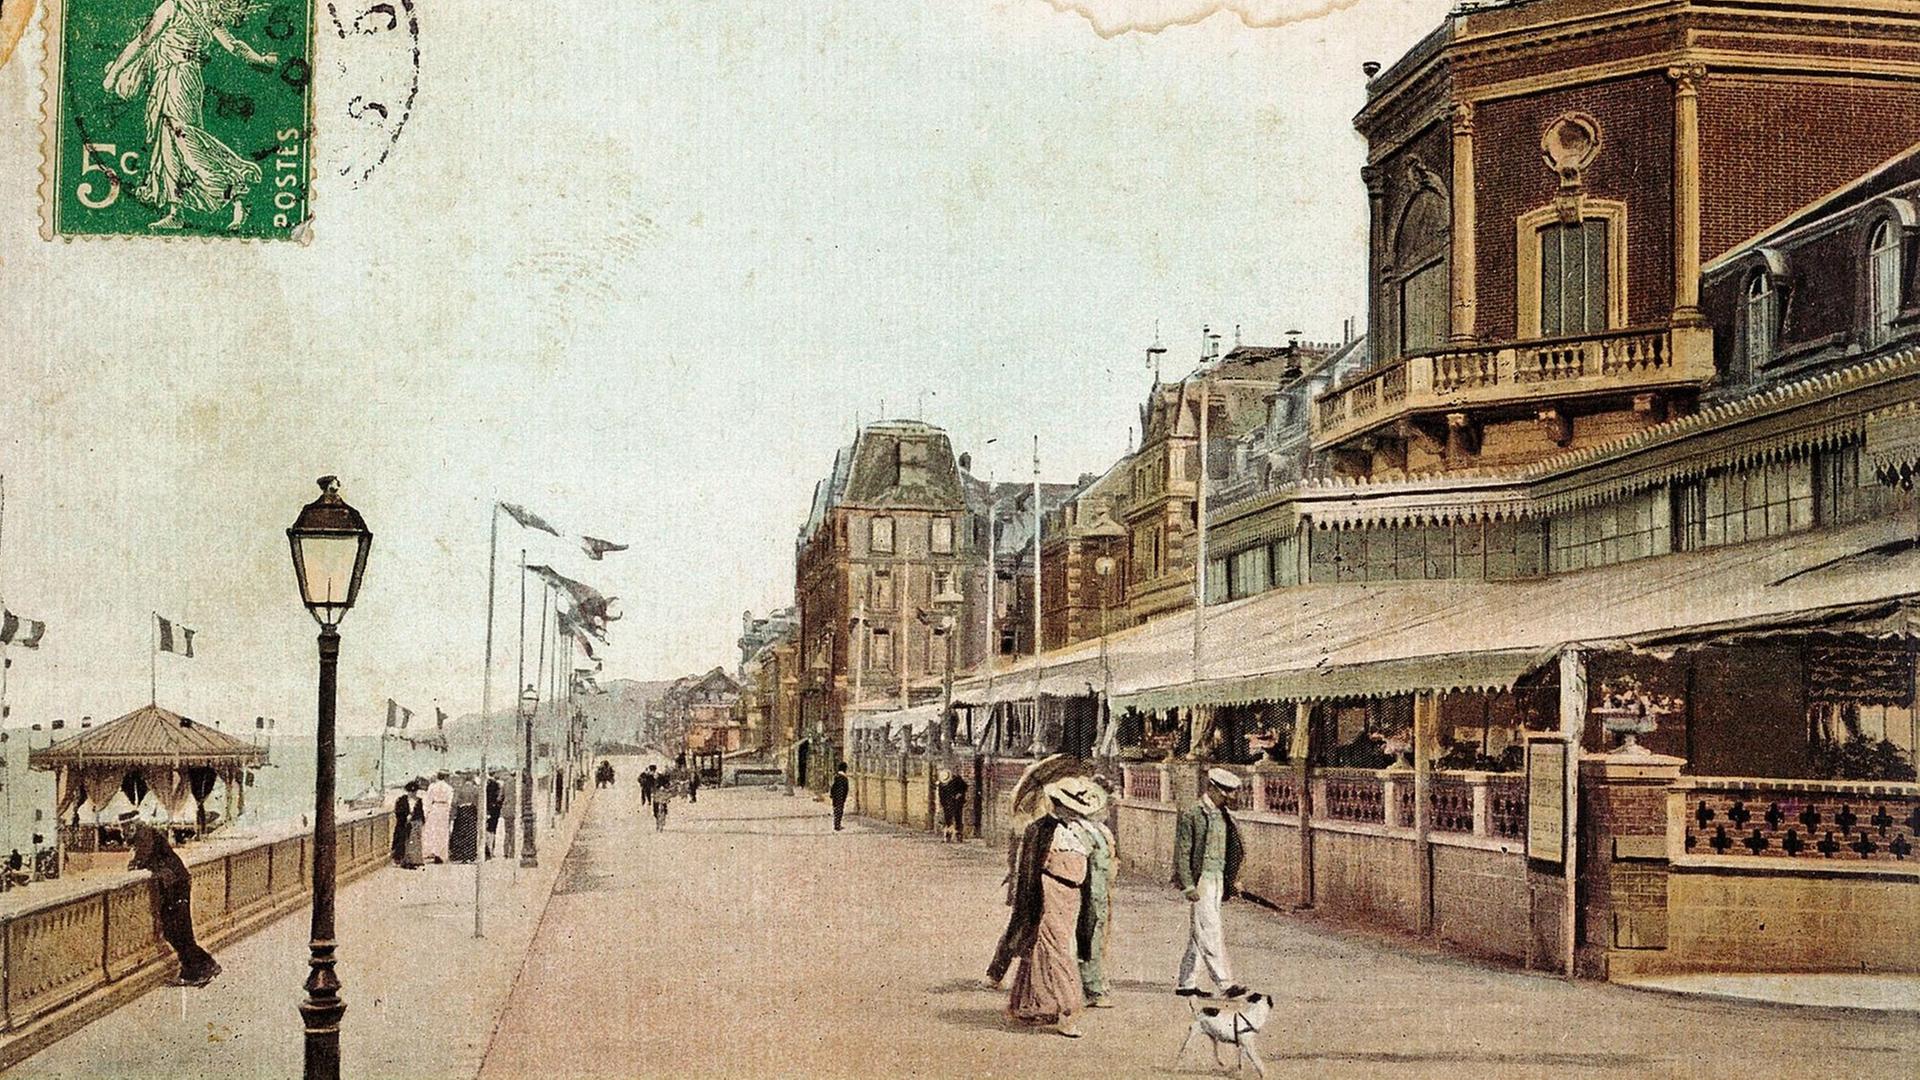 Alte Postkarte mit einer Abbildung der Promenade in Cabourg